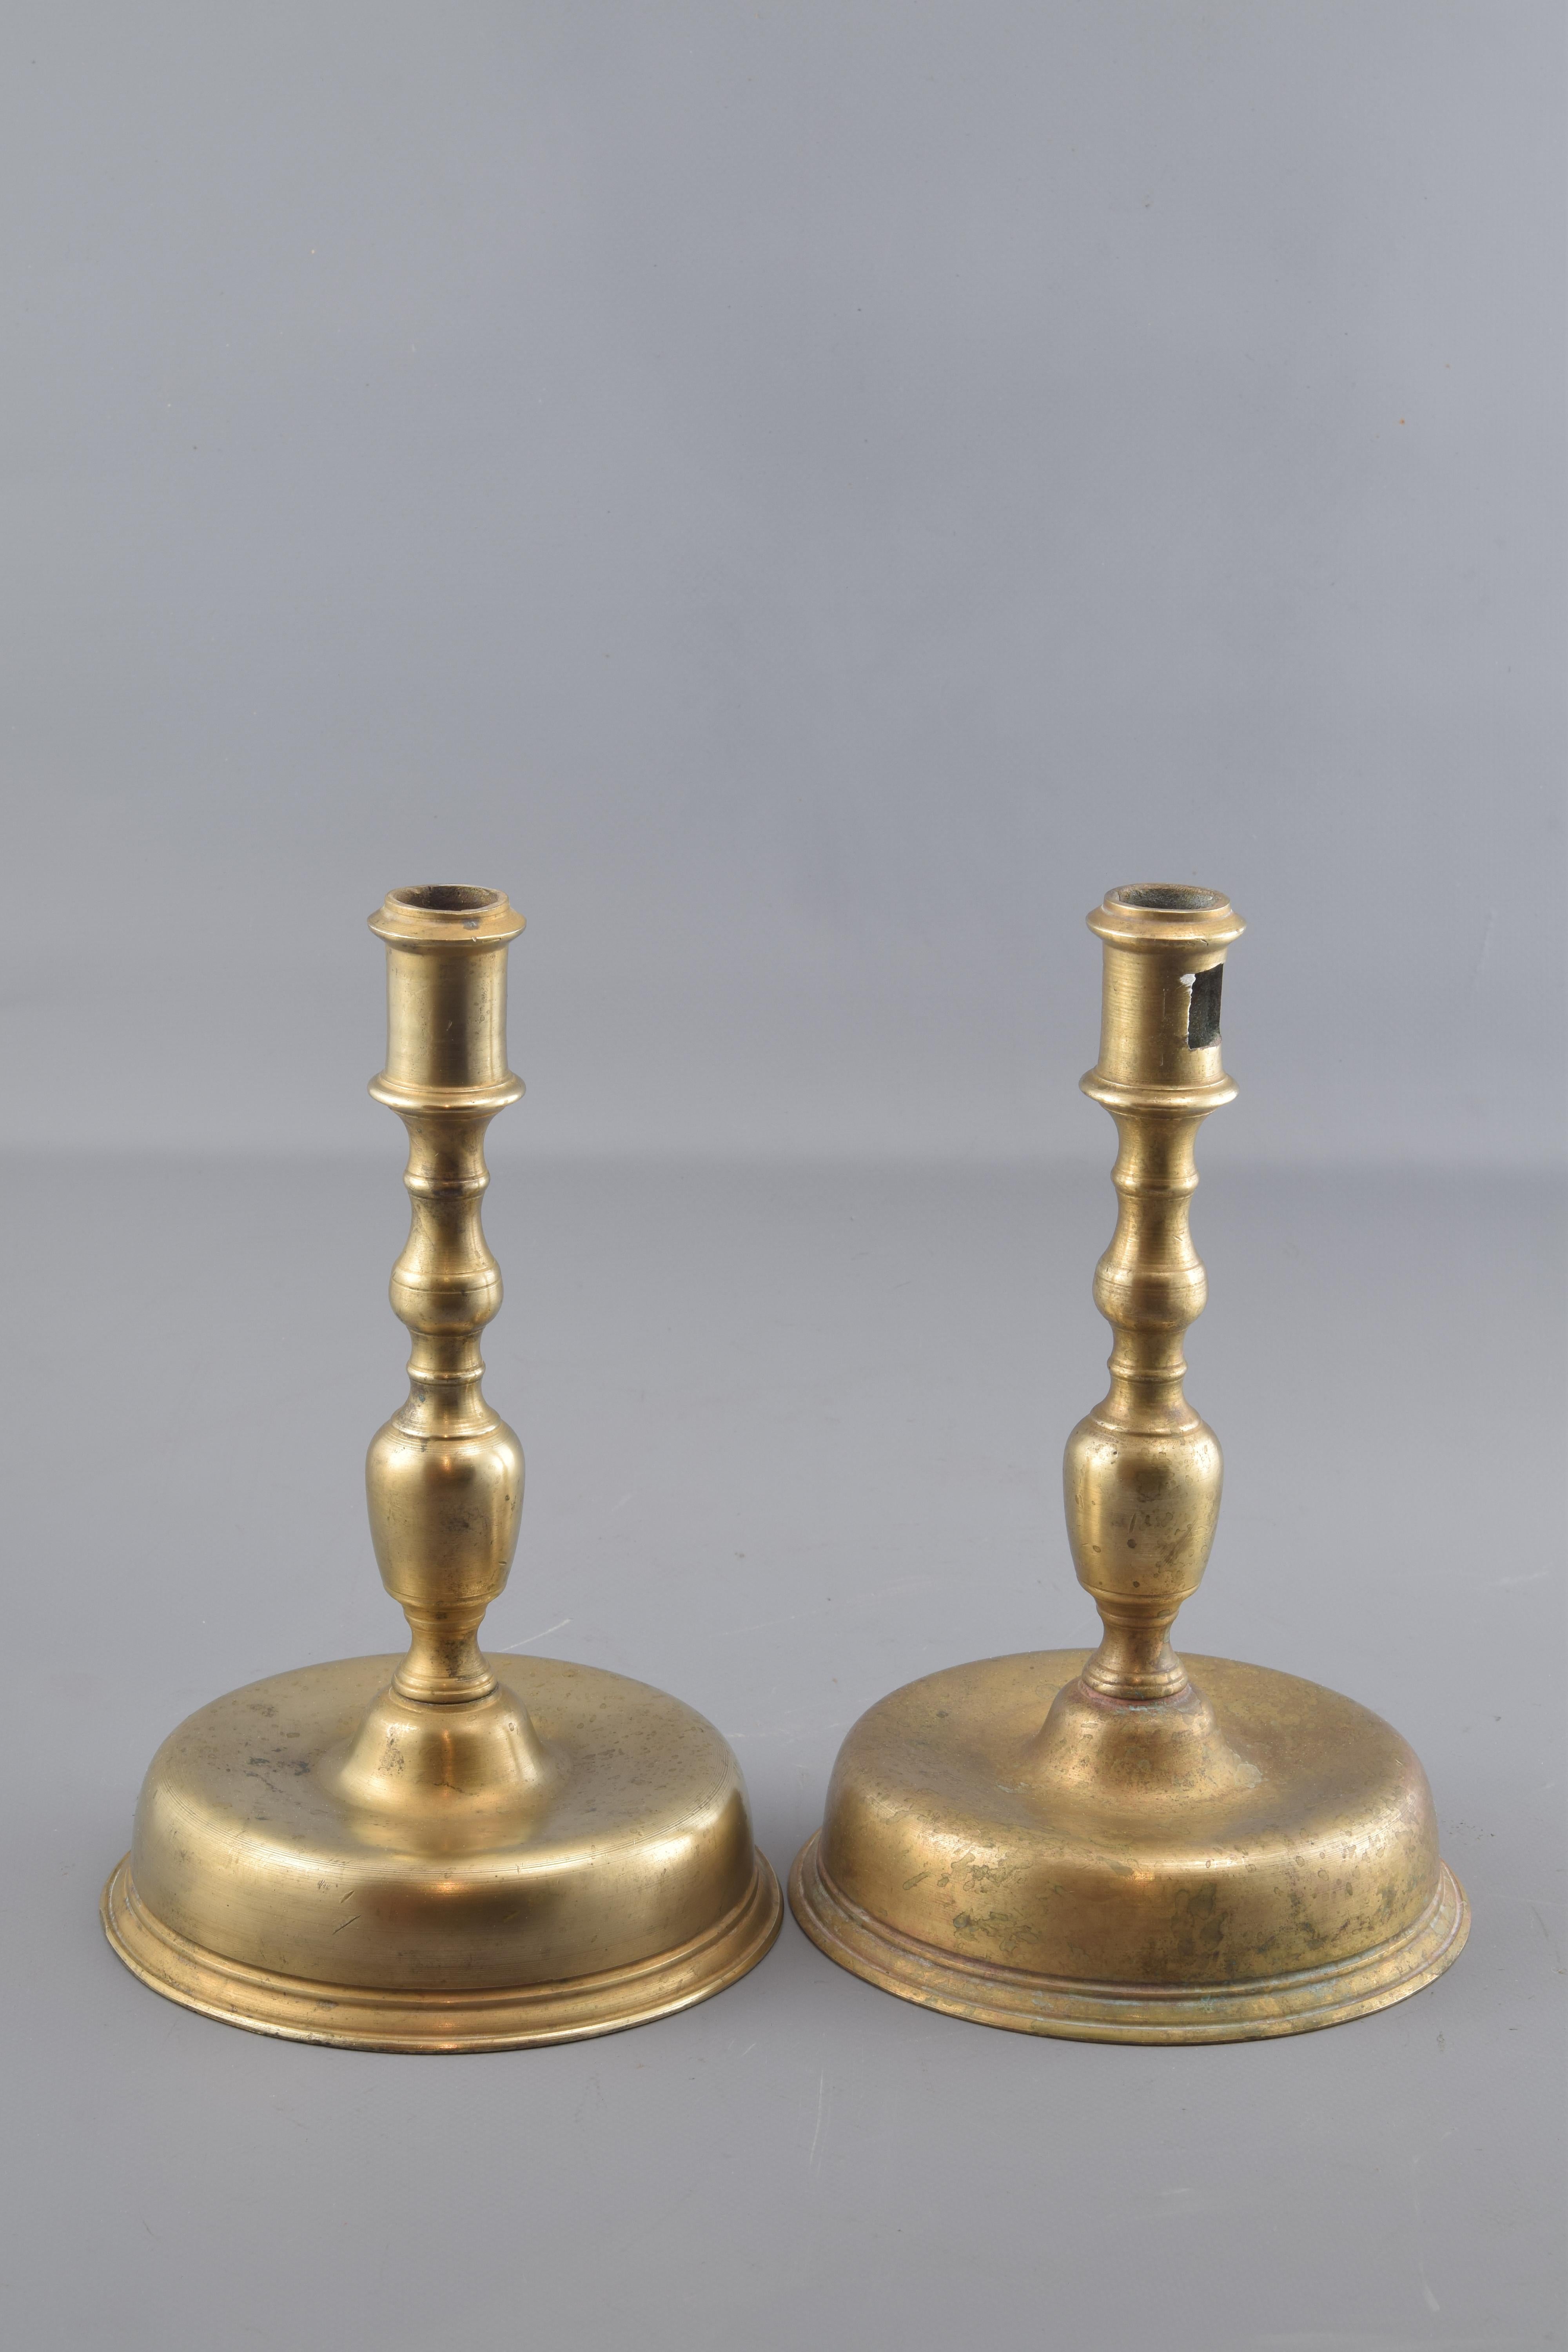 Kerzenständer aus Bronze, bestehend aus einem runden Sockel, der zur Achse des Stücks hin erhöht ist, einem vasenförmigen Körper mit Zierleisten und einem Stück im oberen Teil, das die entsprechende Kerze hält. Sie sind von alten Vorbildern